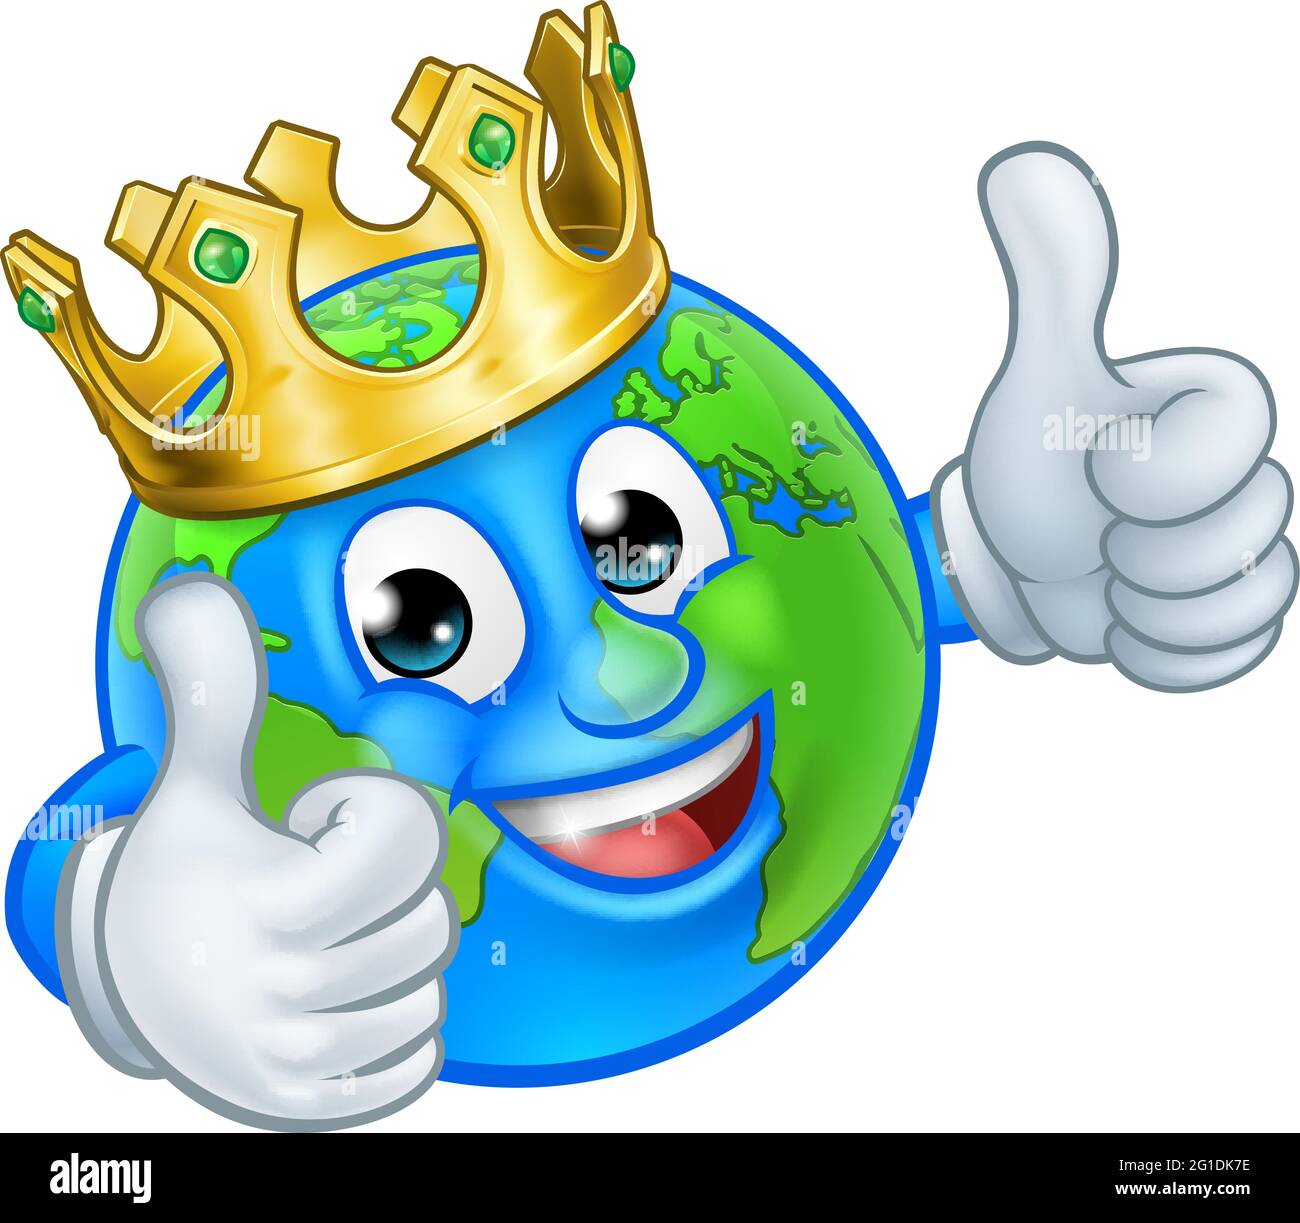 King Gold Crown Globo terráqueo mundo mascota de dibujos animados Ilustración del Vector